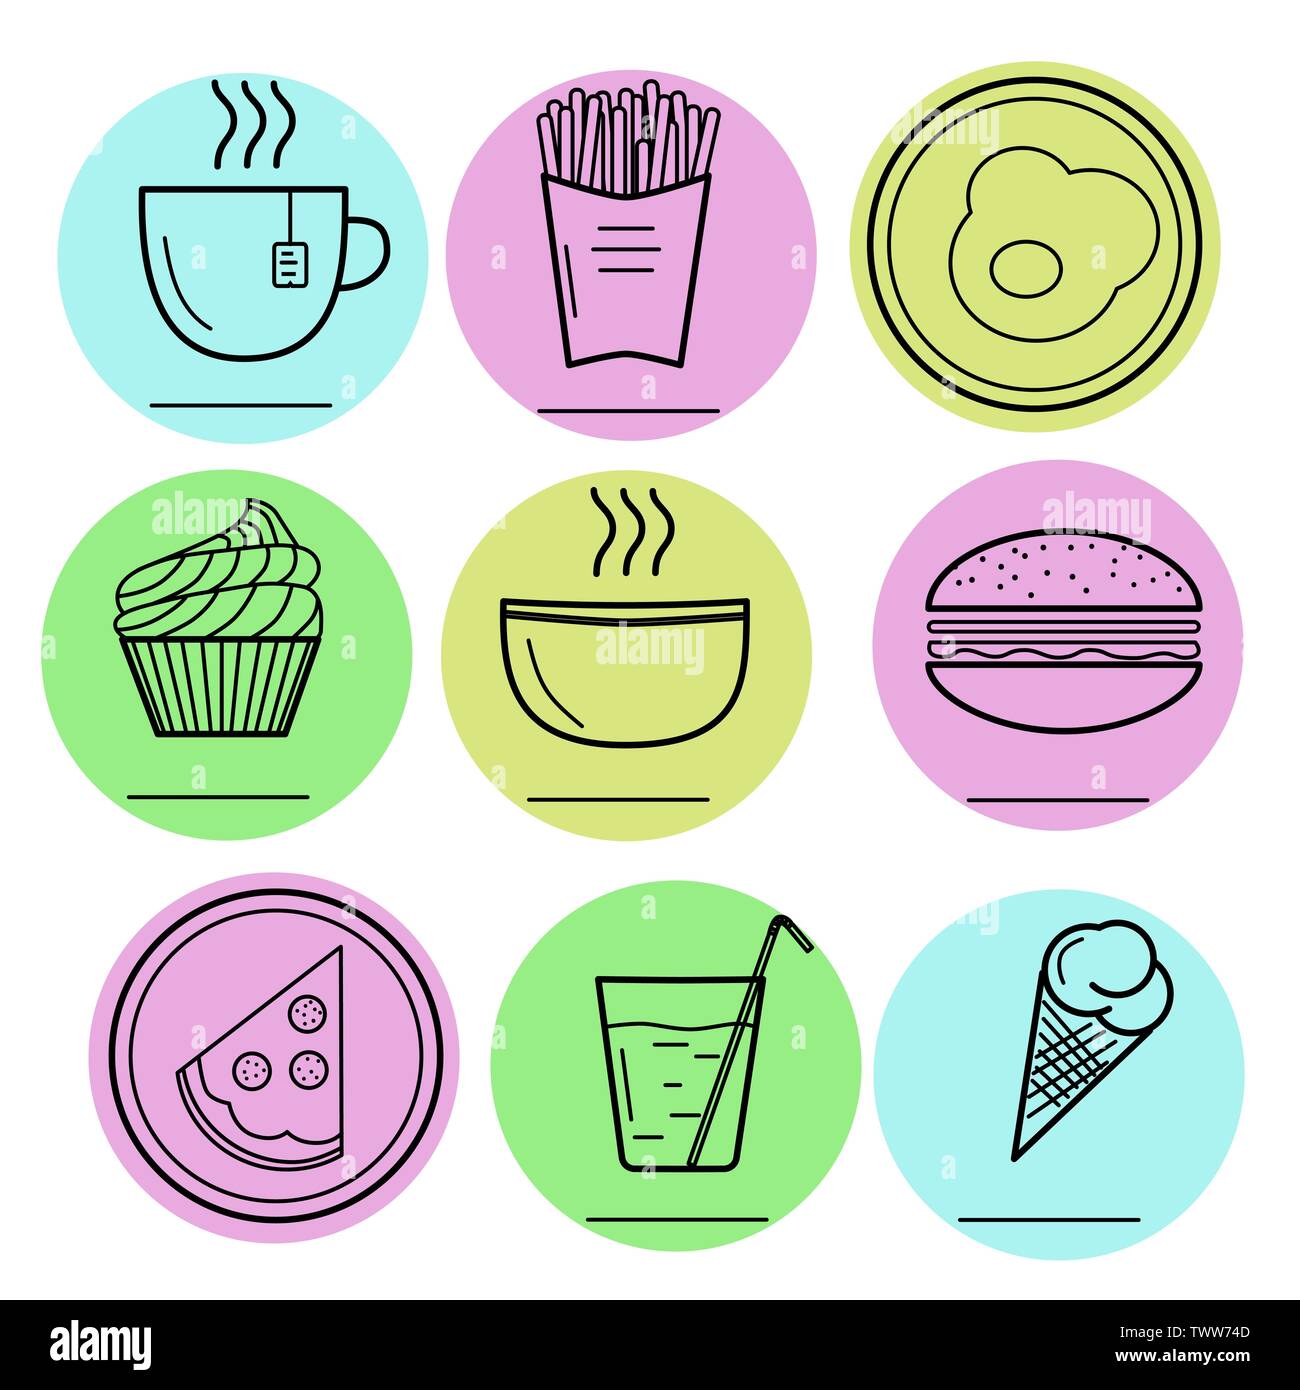 Vector Illustration von Lebensmitteln Symbole. Hamburger, Spiegelei, Pizza, Platte, heiße Suppe, Tee, Eis, Kuchen, Pommes frites, Mineralwasser, Glas, Becher Stock Vektor